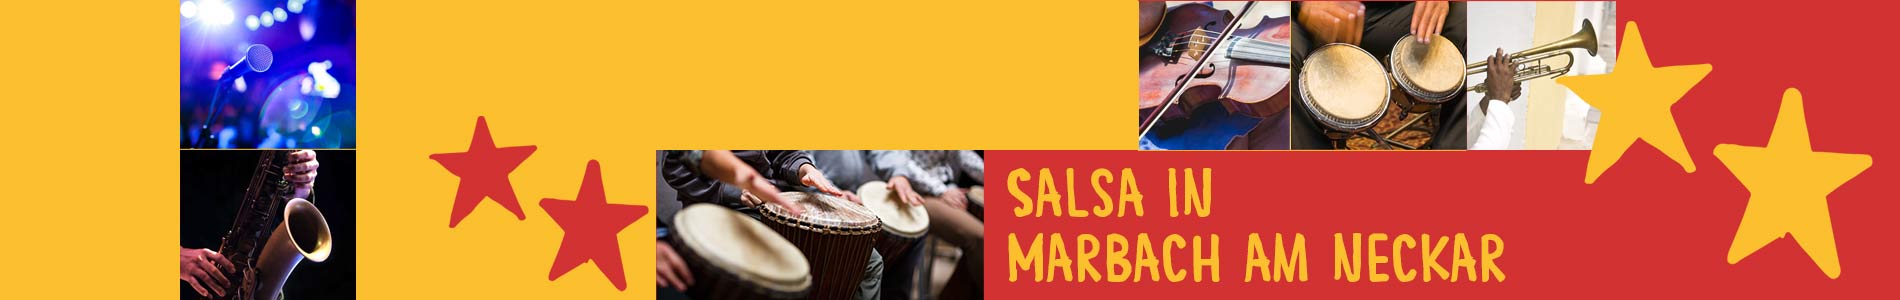 Salsa in Marbach am Neckar – Salsa lernen und tanzen, Tanzkurse, Partys, Veranstaltungen